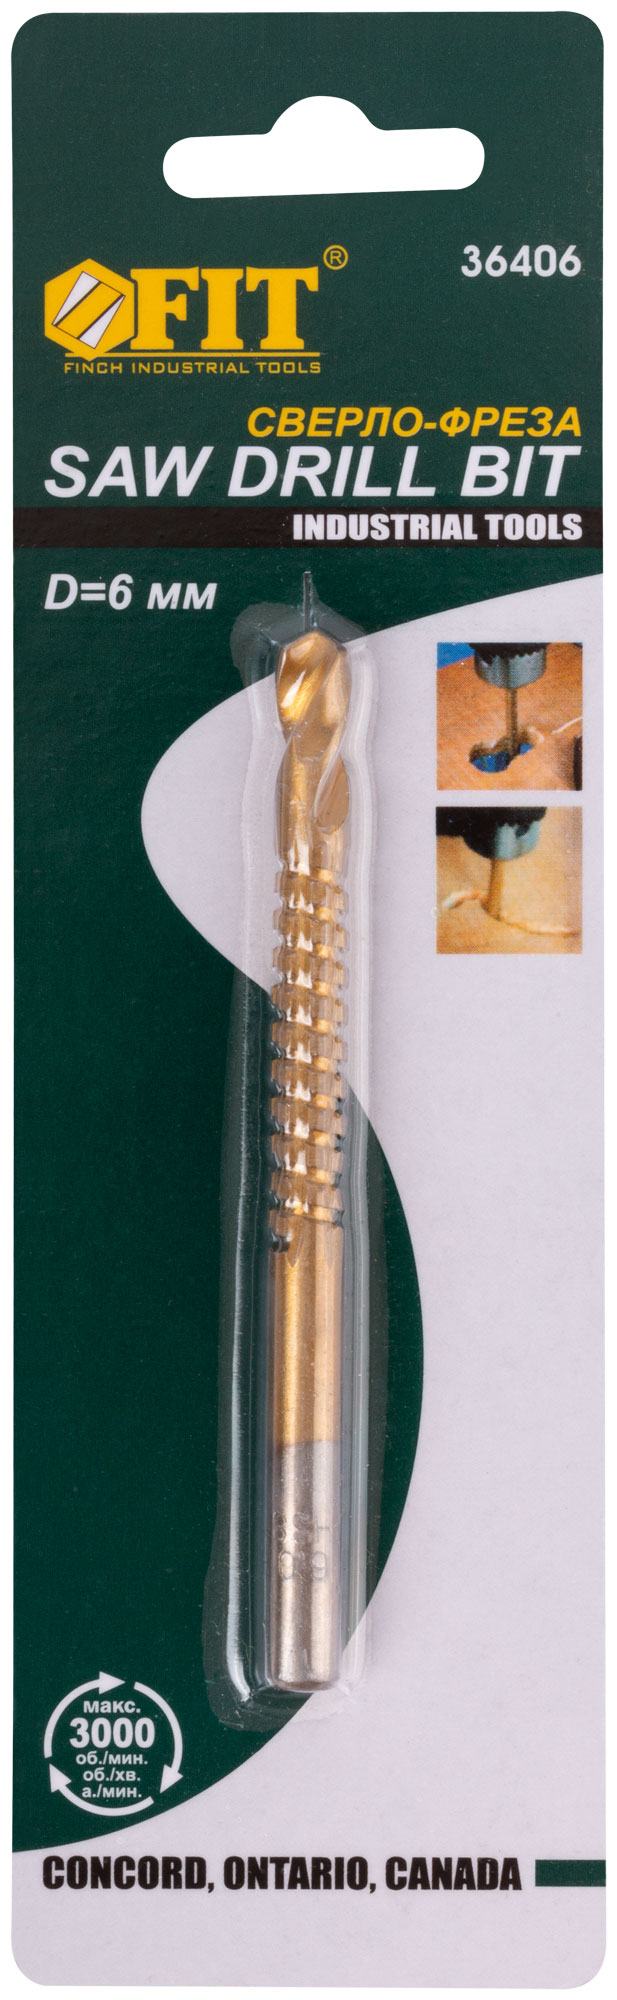 Сверло-фреза универсальное 6 мм. FIT 36406 универсальное двустороннее широкое полотно по дереву и металлу stayer